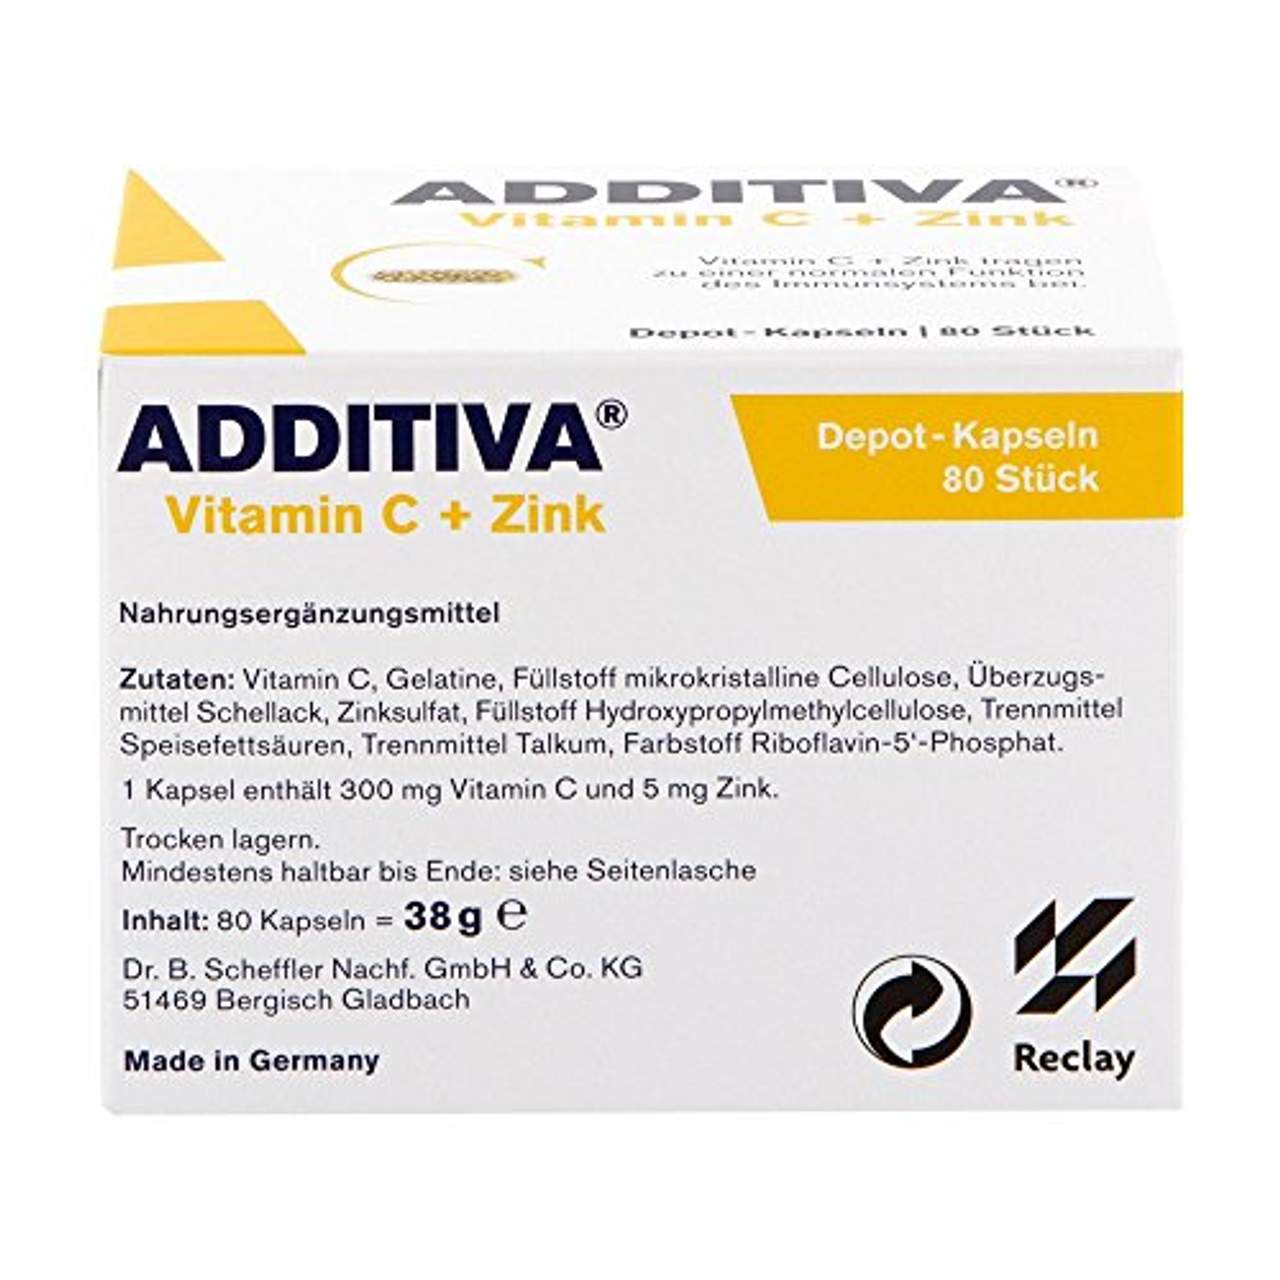 Dr.B.Scheffler Nachf. GmbH & Co. KG Additiva Vitamin C